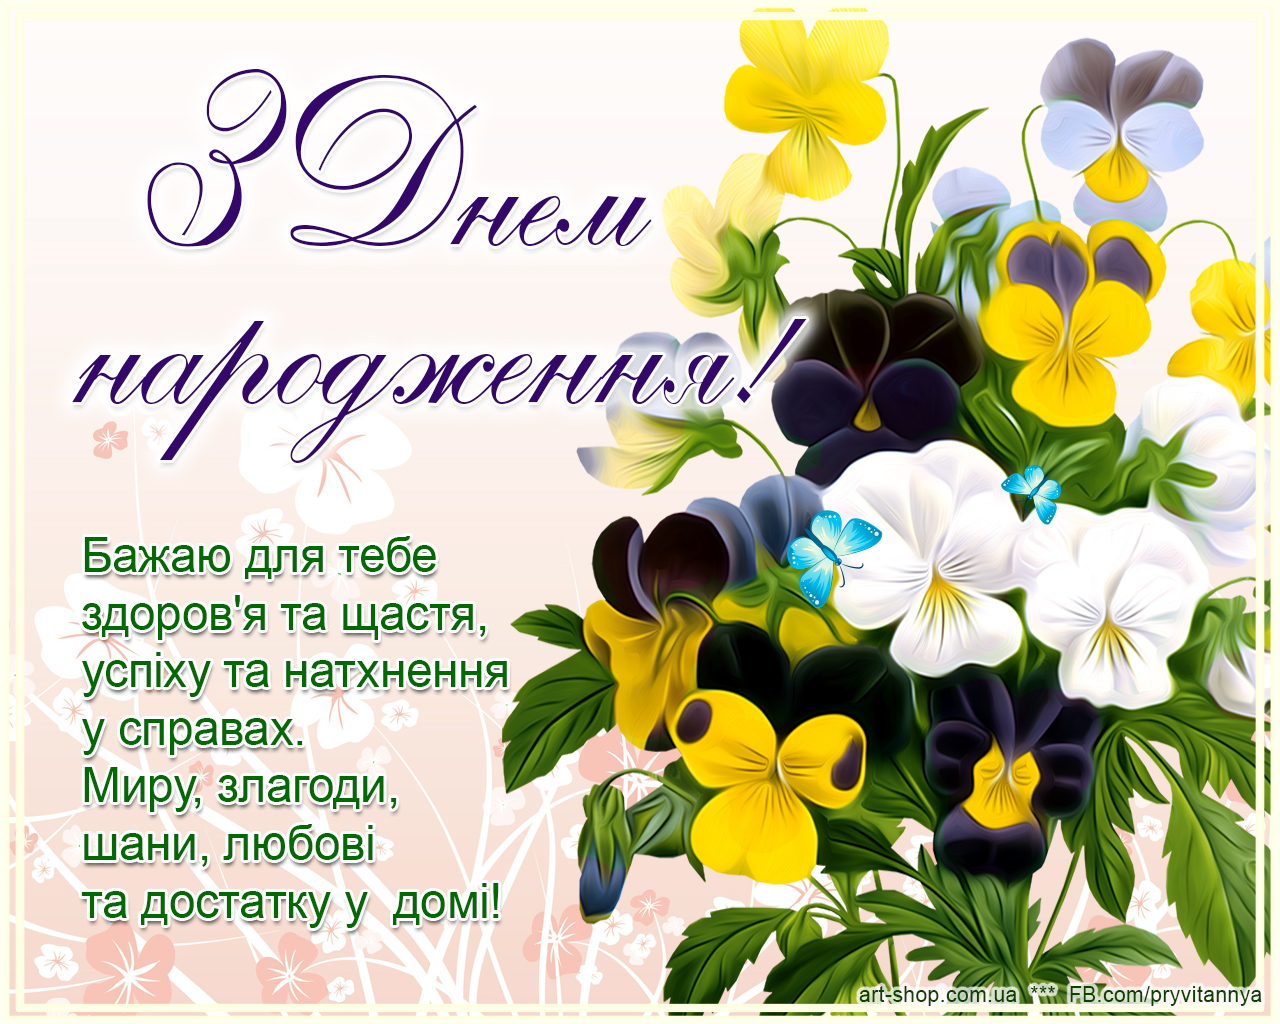 Поздравление сестре на украинском. З днем народження. Привітання з днем народження. Поздравления с днём рождения на украинском языке. Листівки з днем народження.